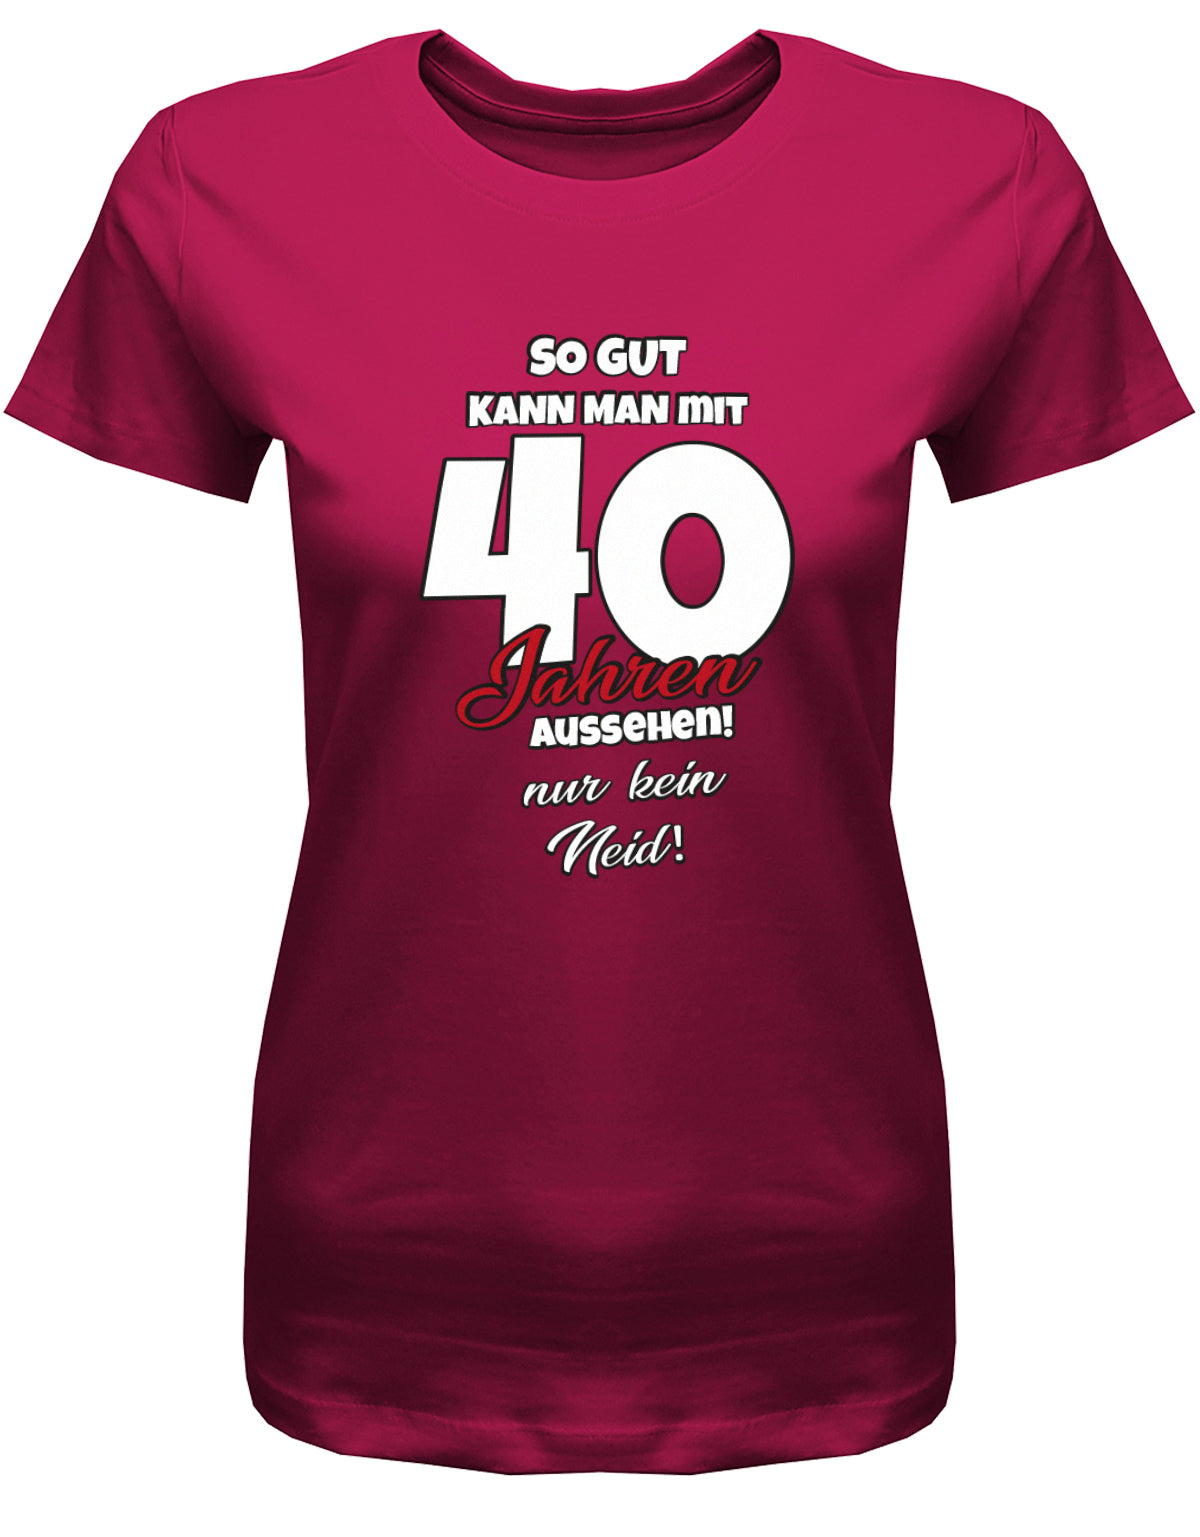 Lustiges T-Shirt zum 40 Geburtstag für die Frau Bedruckt mit So gut kann man mit 40 Jahren aussehen! Nur kein Neid! Sorbet